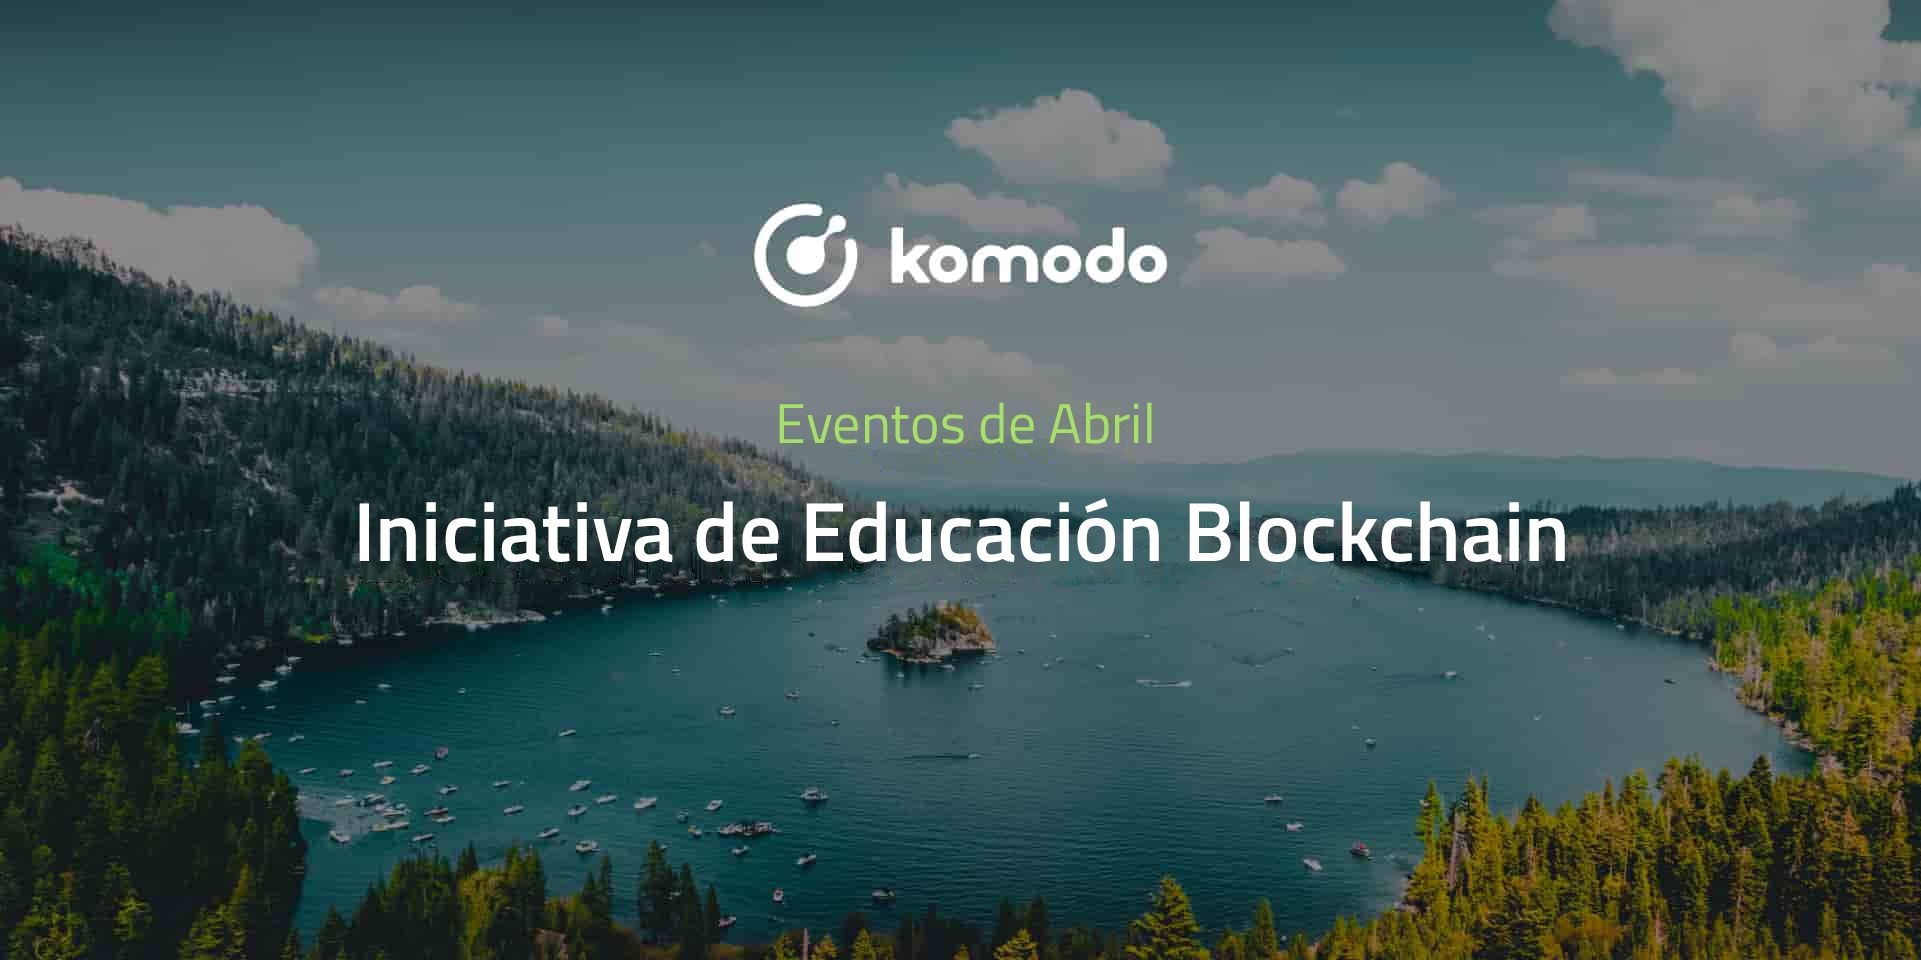 Abril de Komodo 2021 - Iniciativa de Educación Blockchain